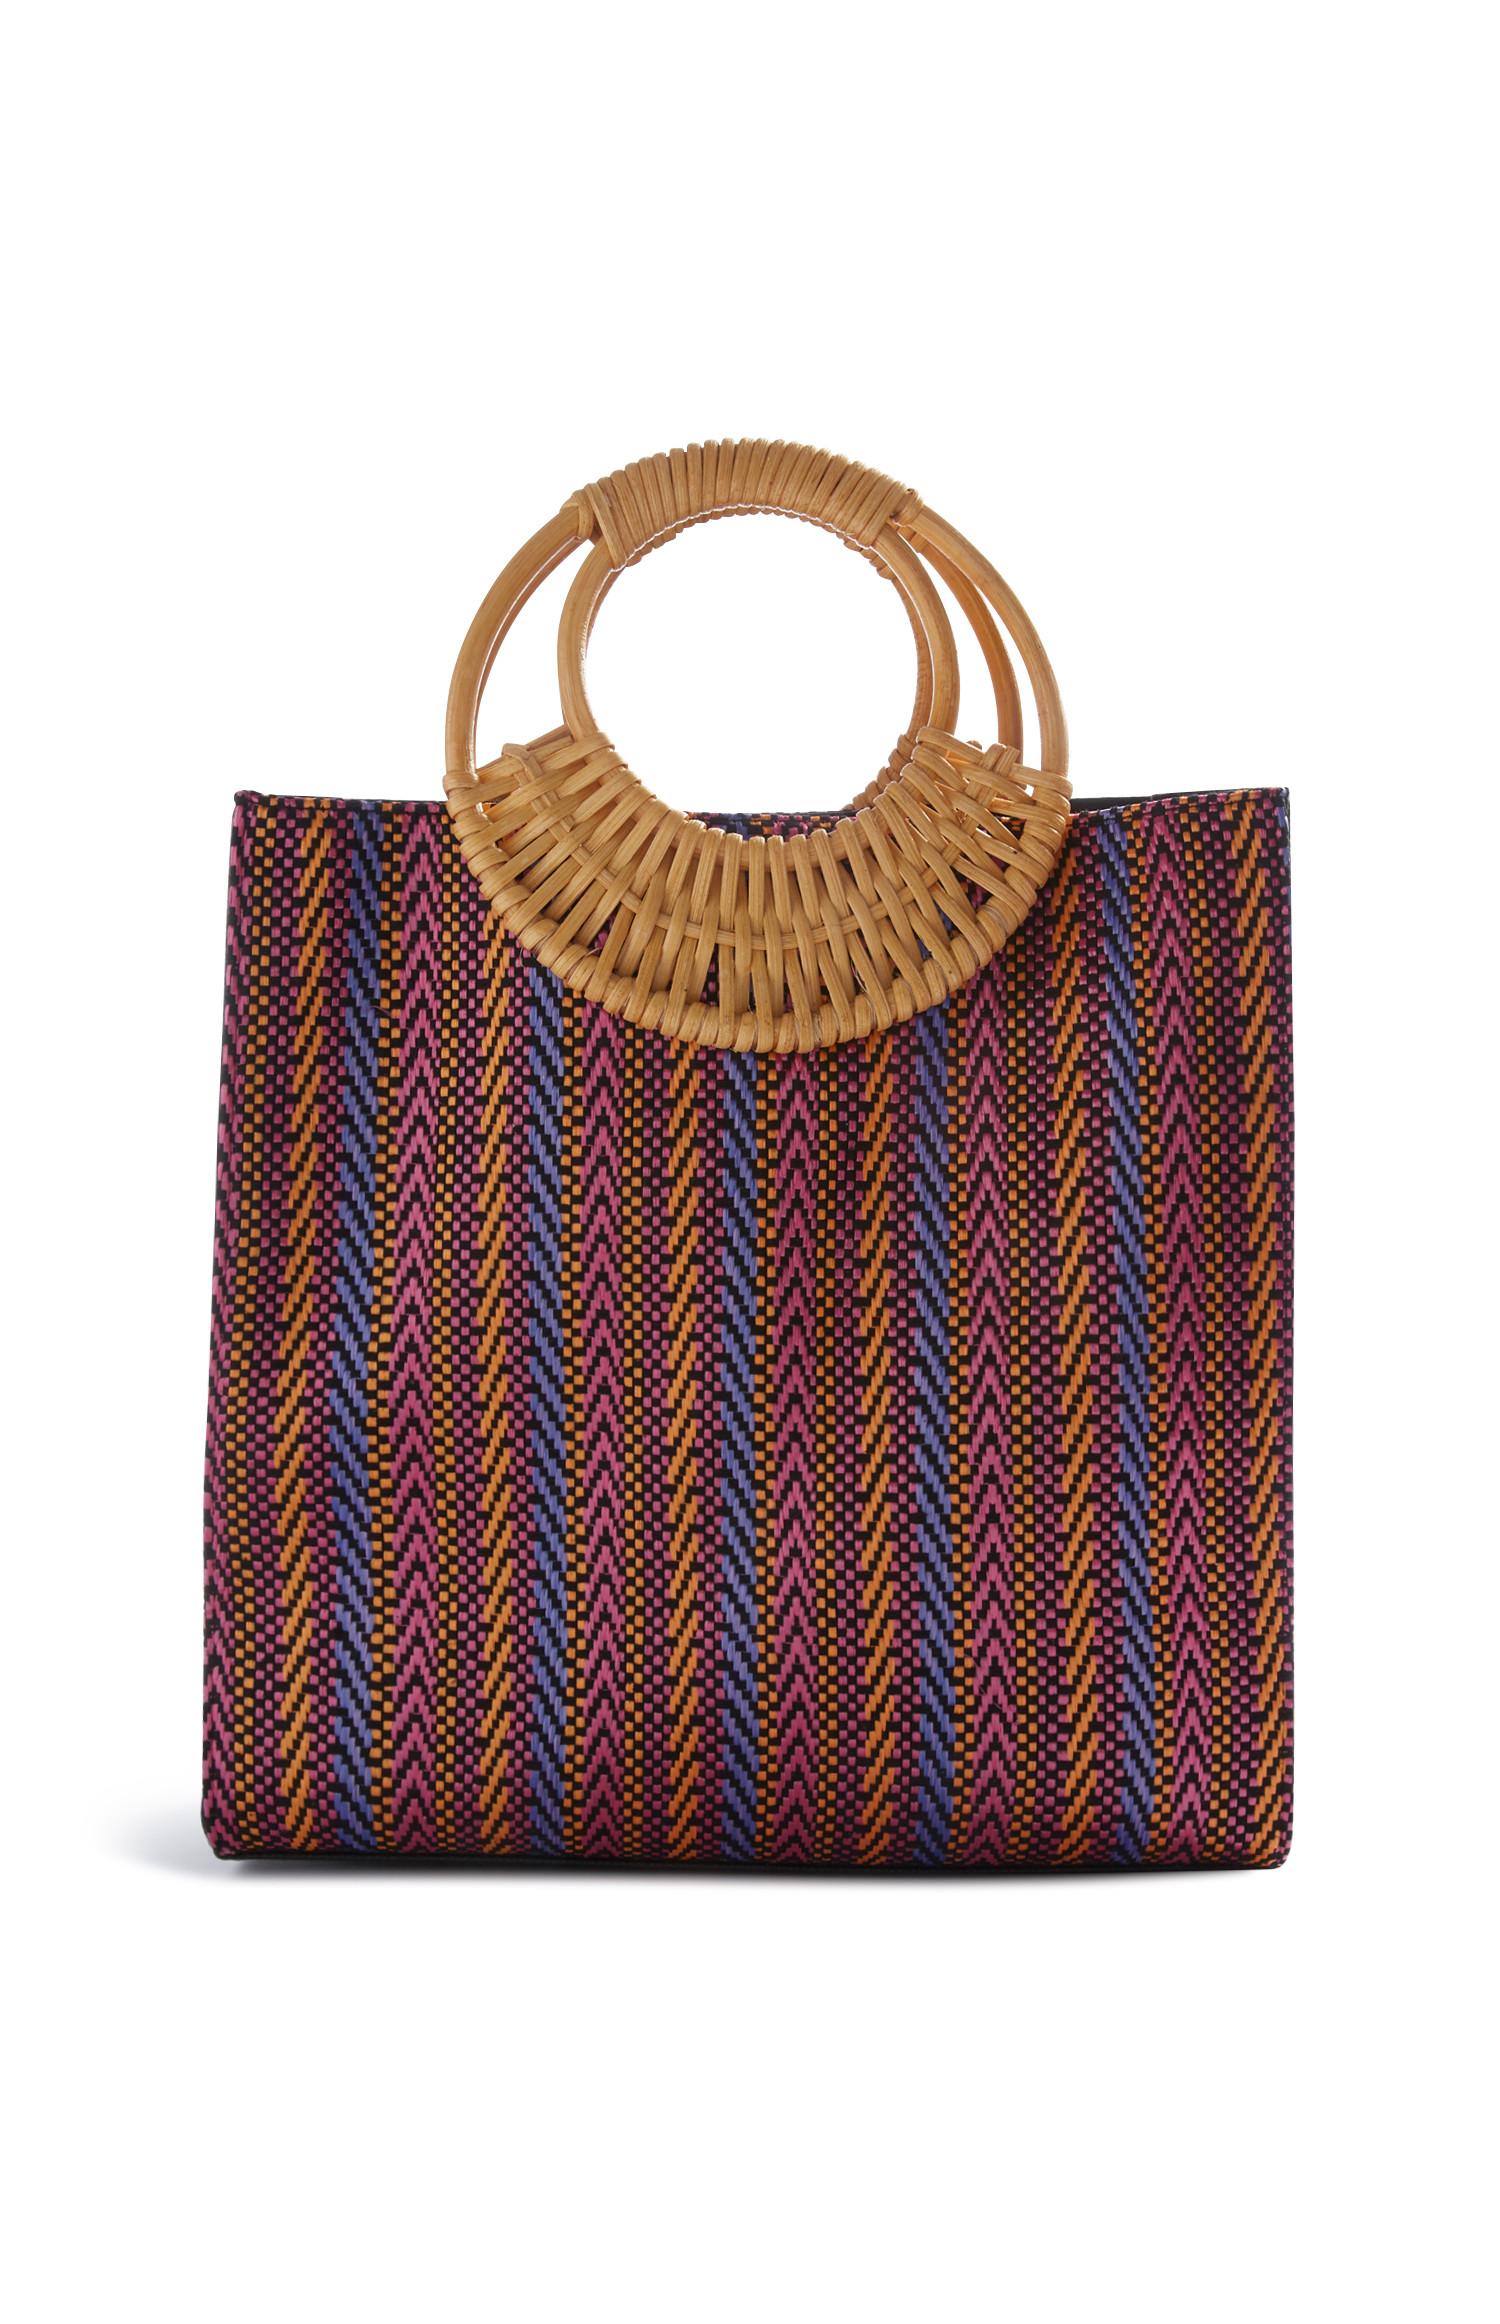 Woven Handbag | Totebag | Bags purses | Womens | Categories | Primark UK